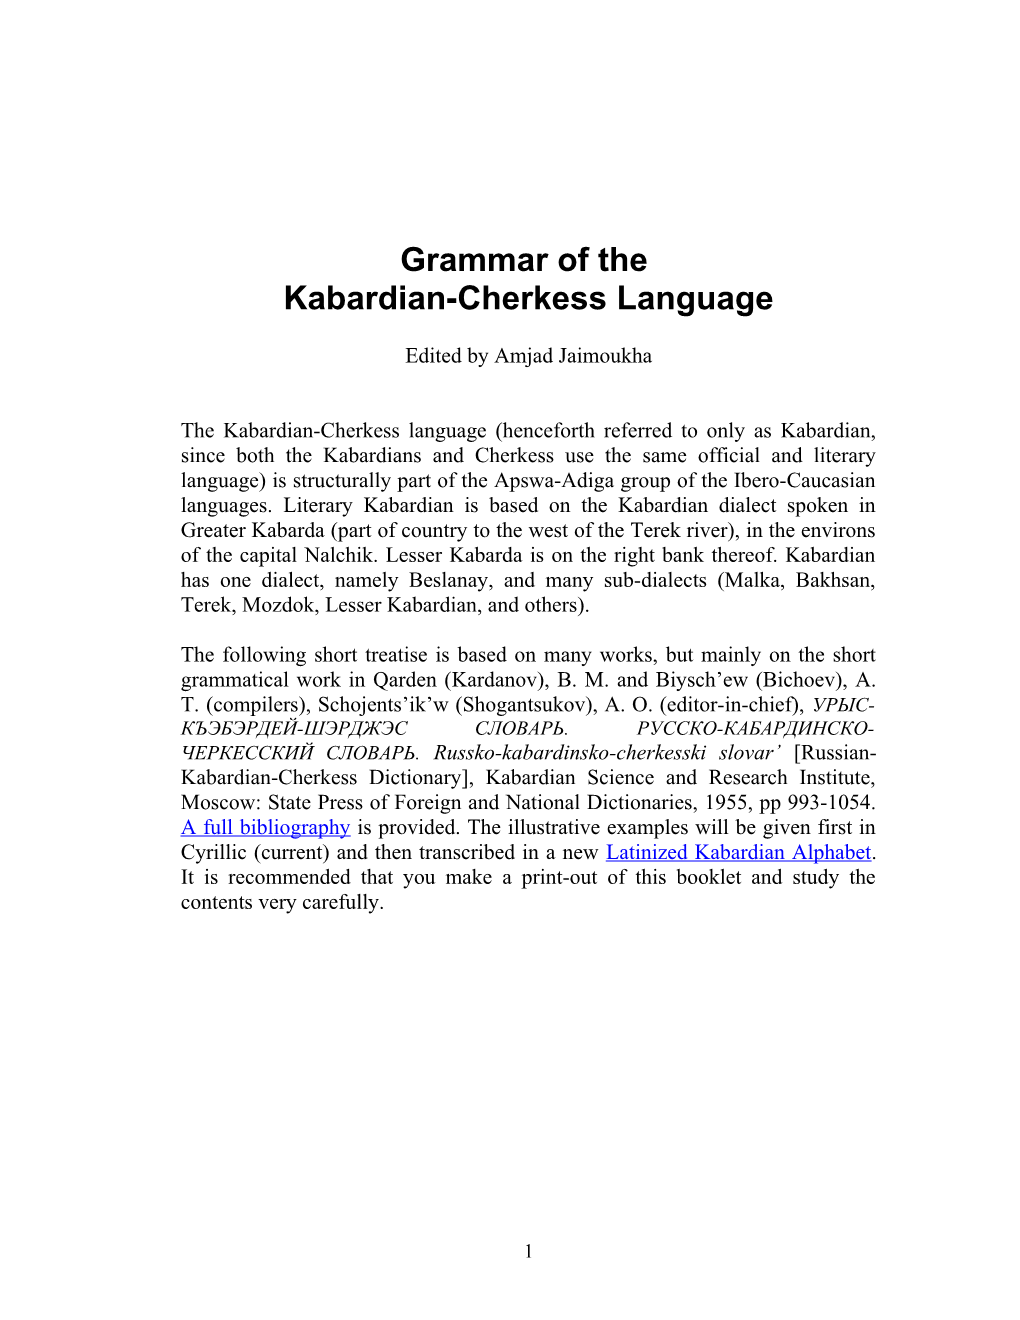 Kabardian-Cherkess Language